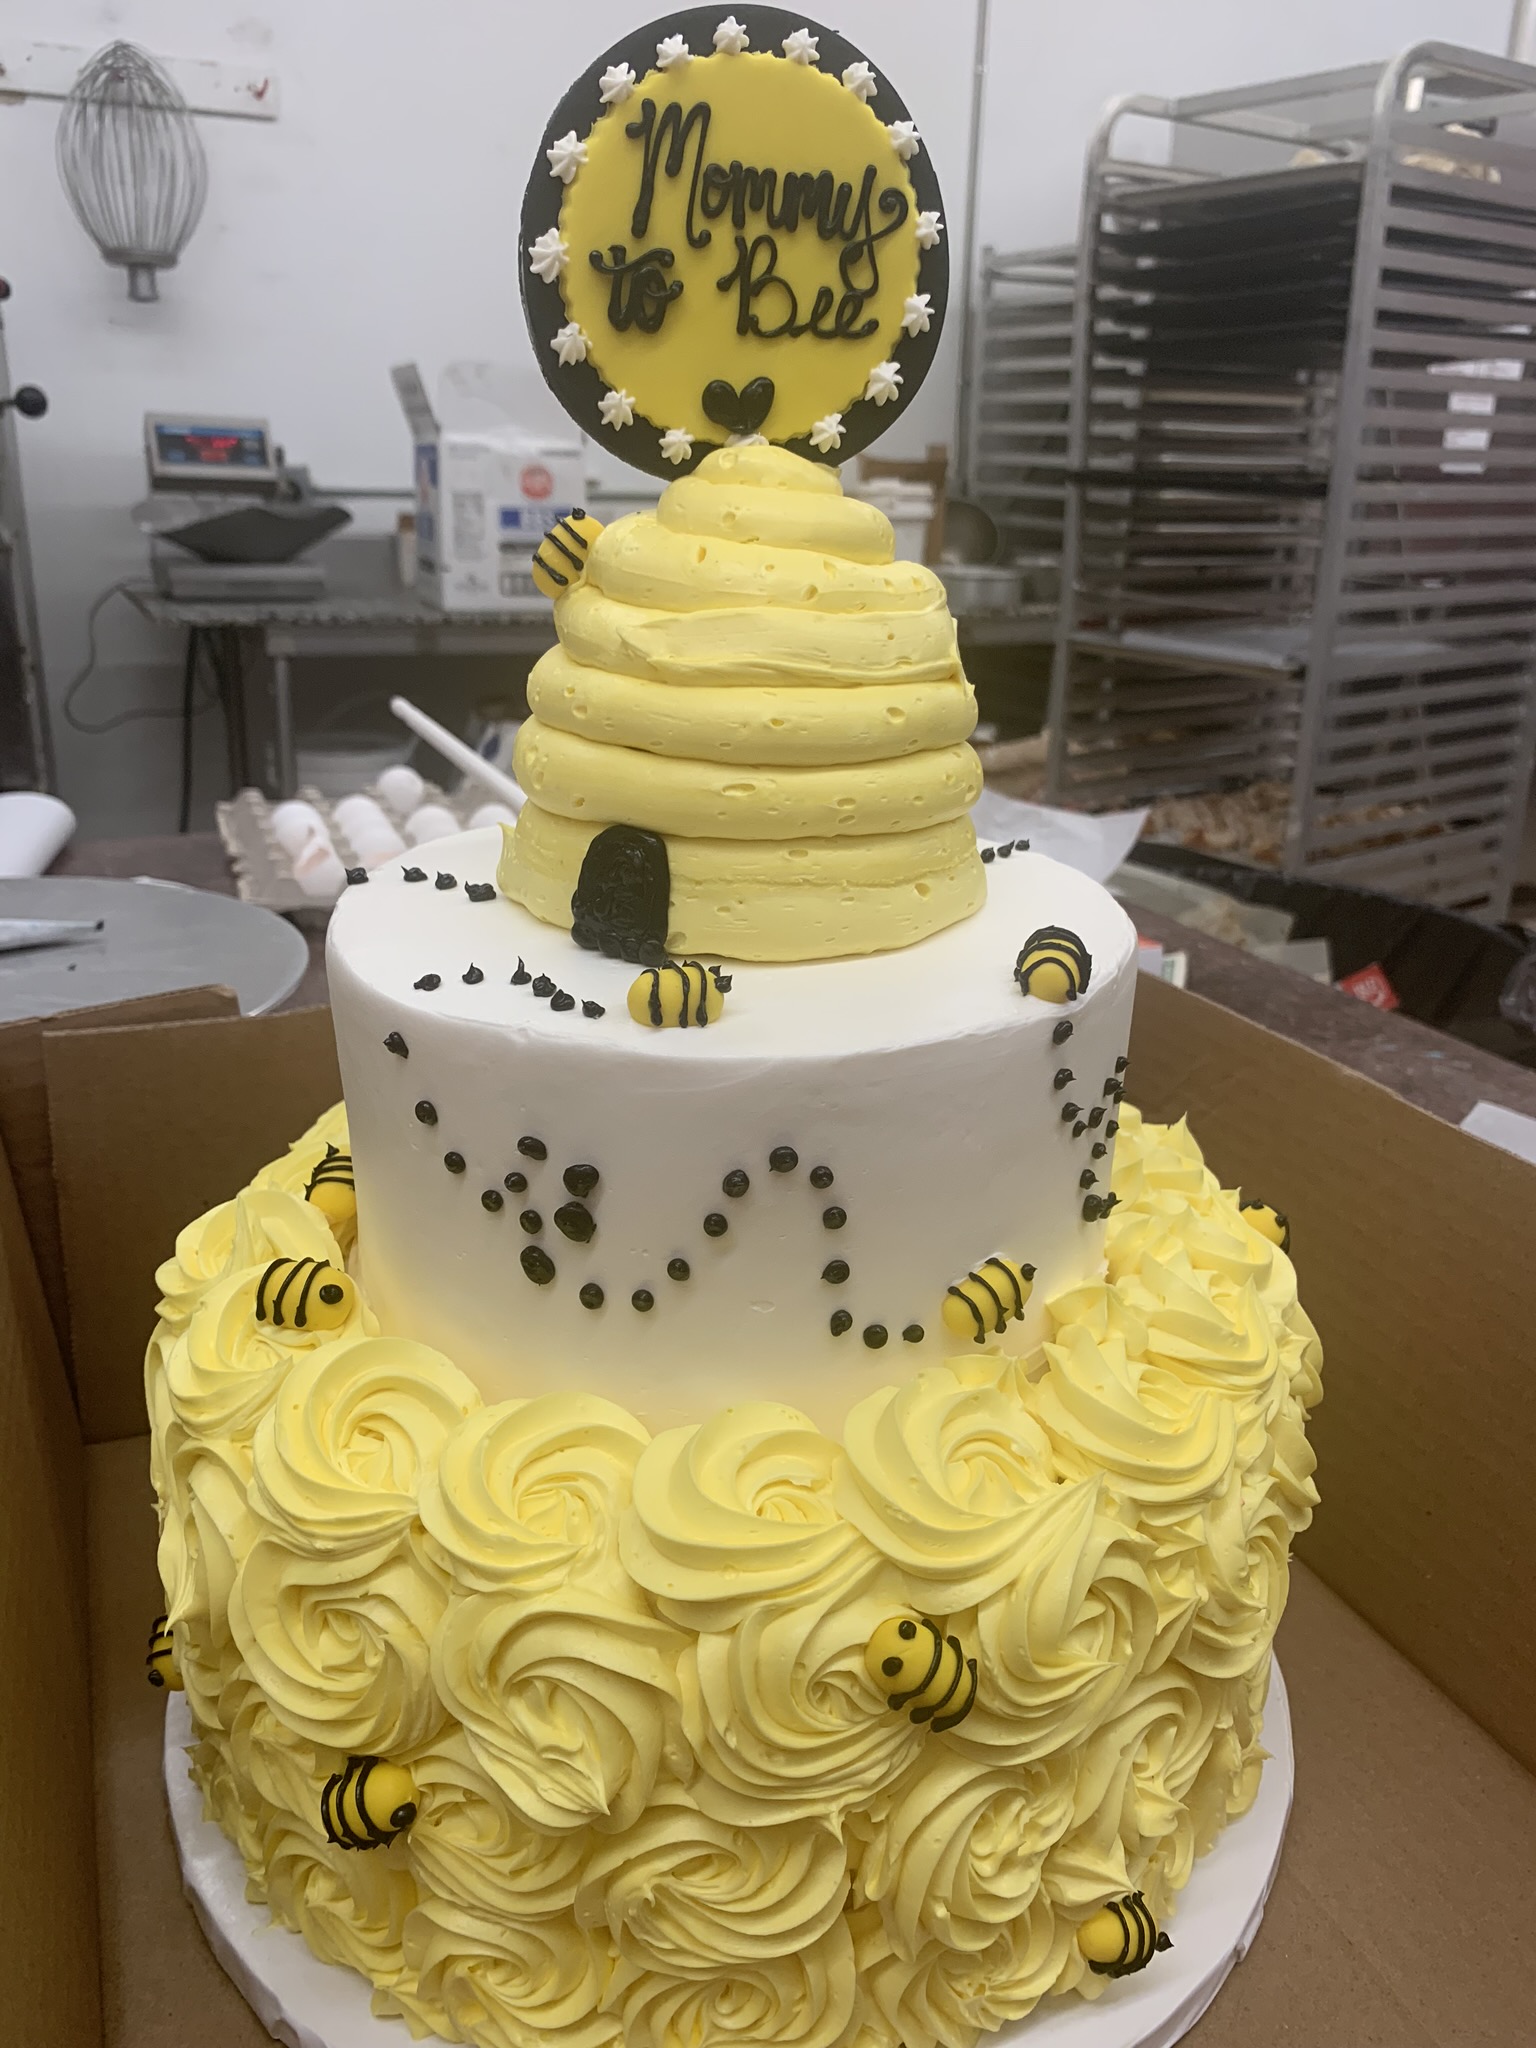 Best Birthday Cakes NJ | Custom Cakes NJ | Toms River NJ ...